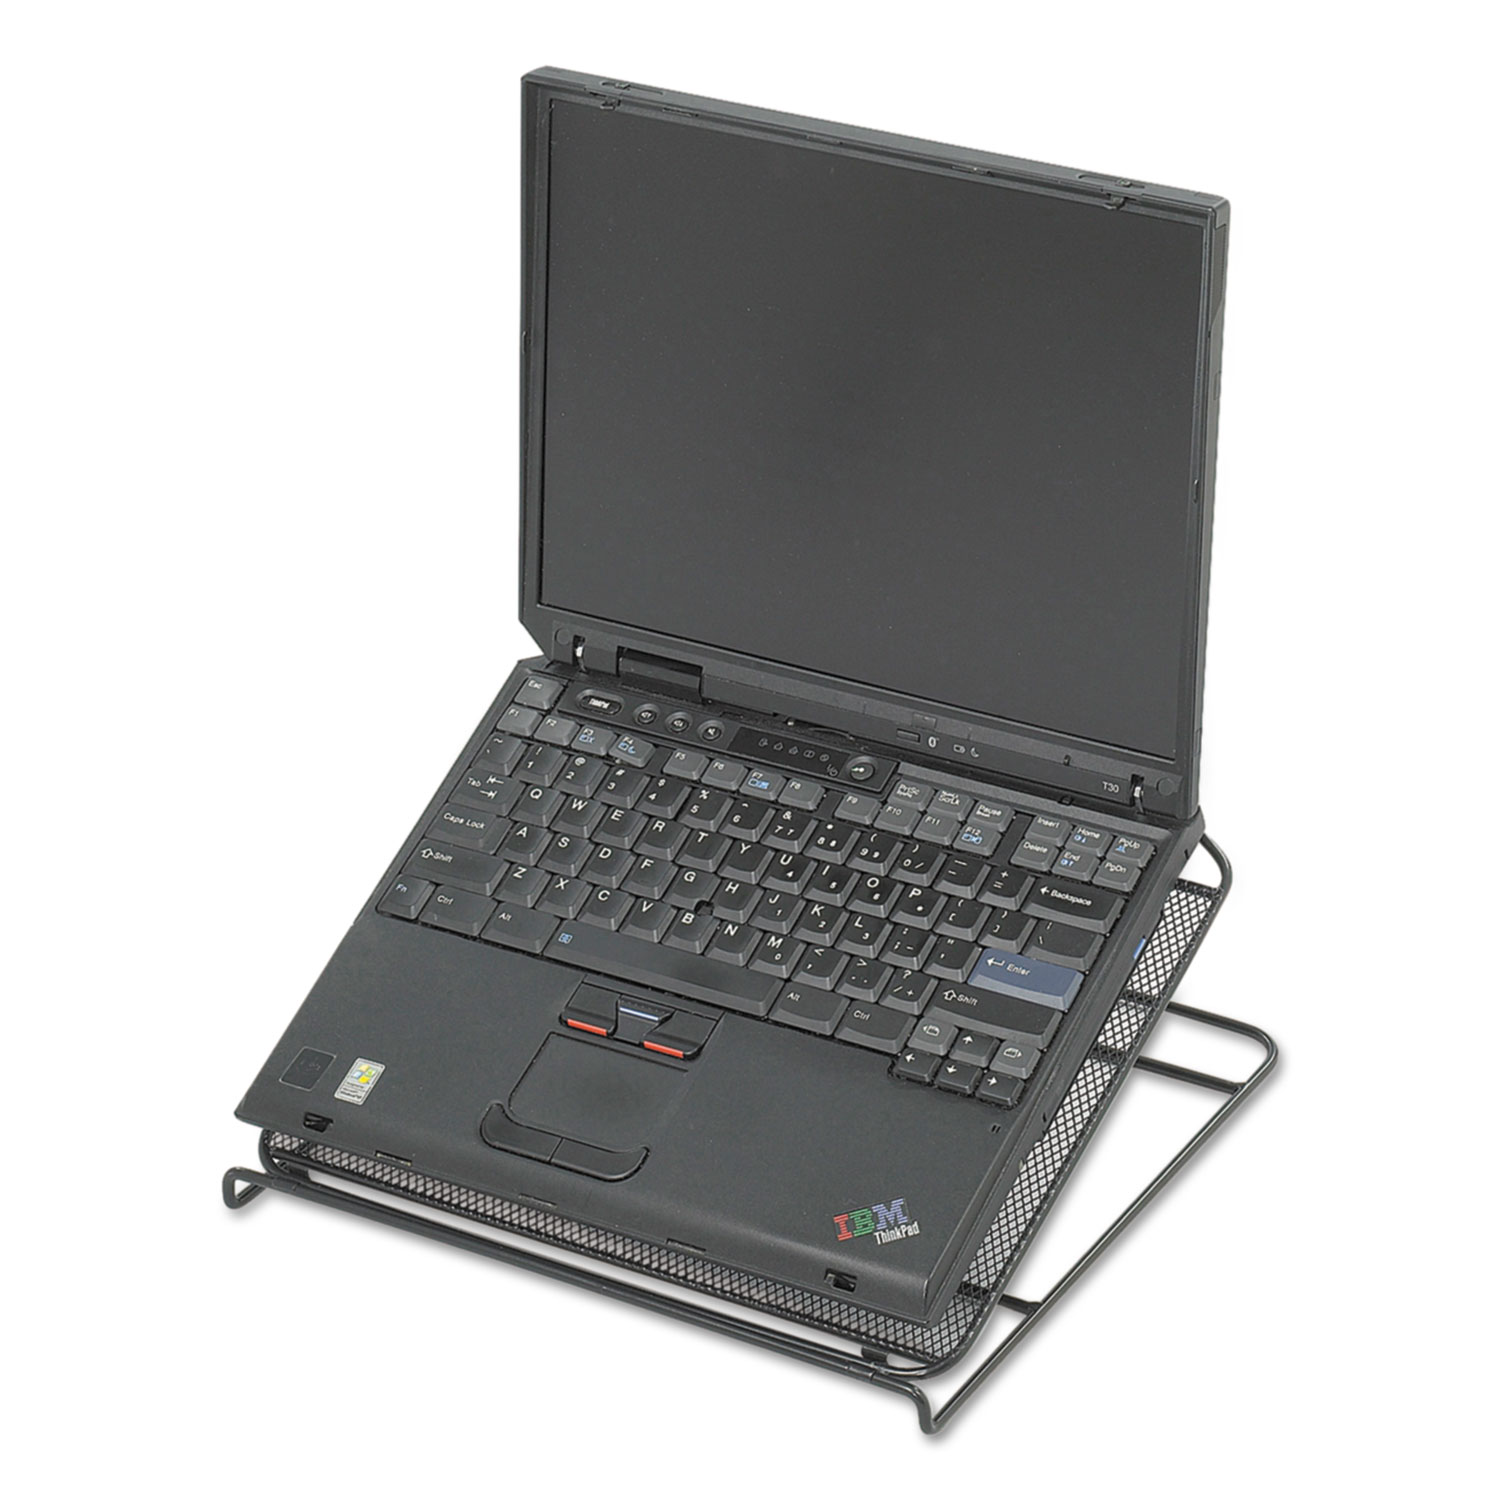  Safco 2161BL Onyx Adjustable Steel Mesh Laptop Stand, 12 1/4 x 12 1/4 x 1, Black (SAF2161BL) 